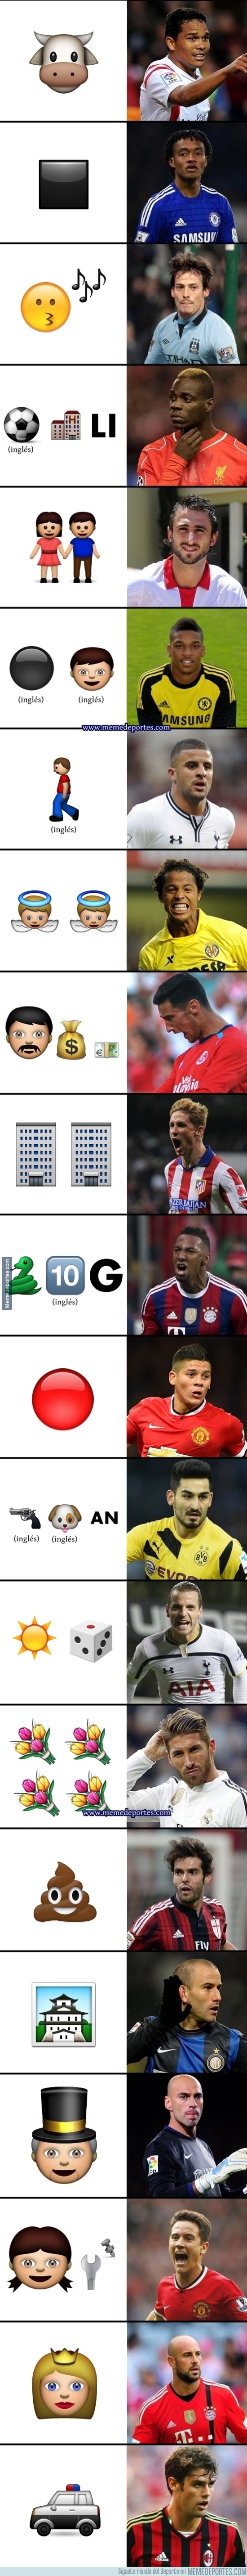 665920 - TEST EMOJIS: ¿Qué jugadores de fútbol son estos emoticonos de Whatsapp?